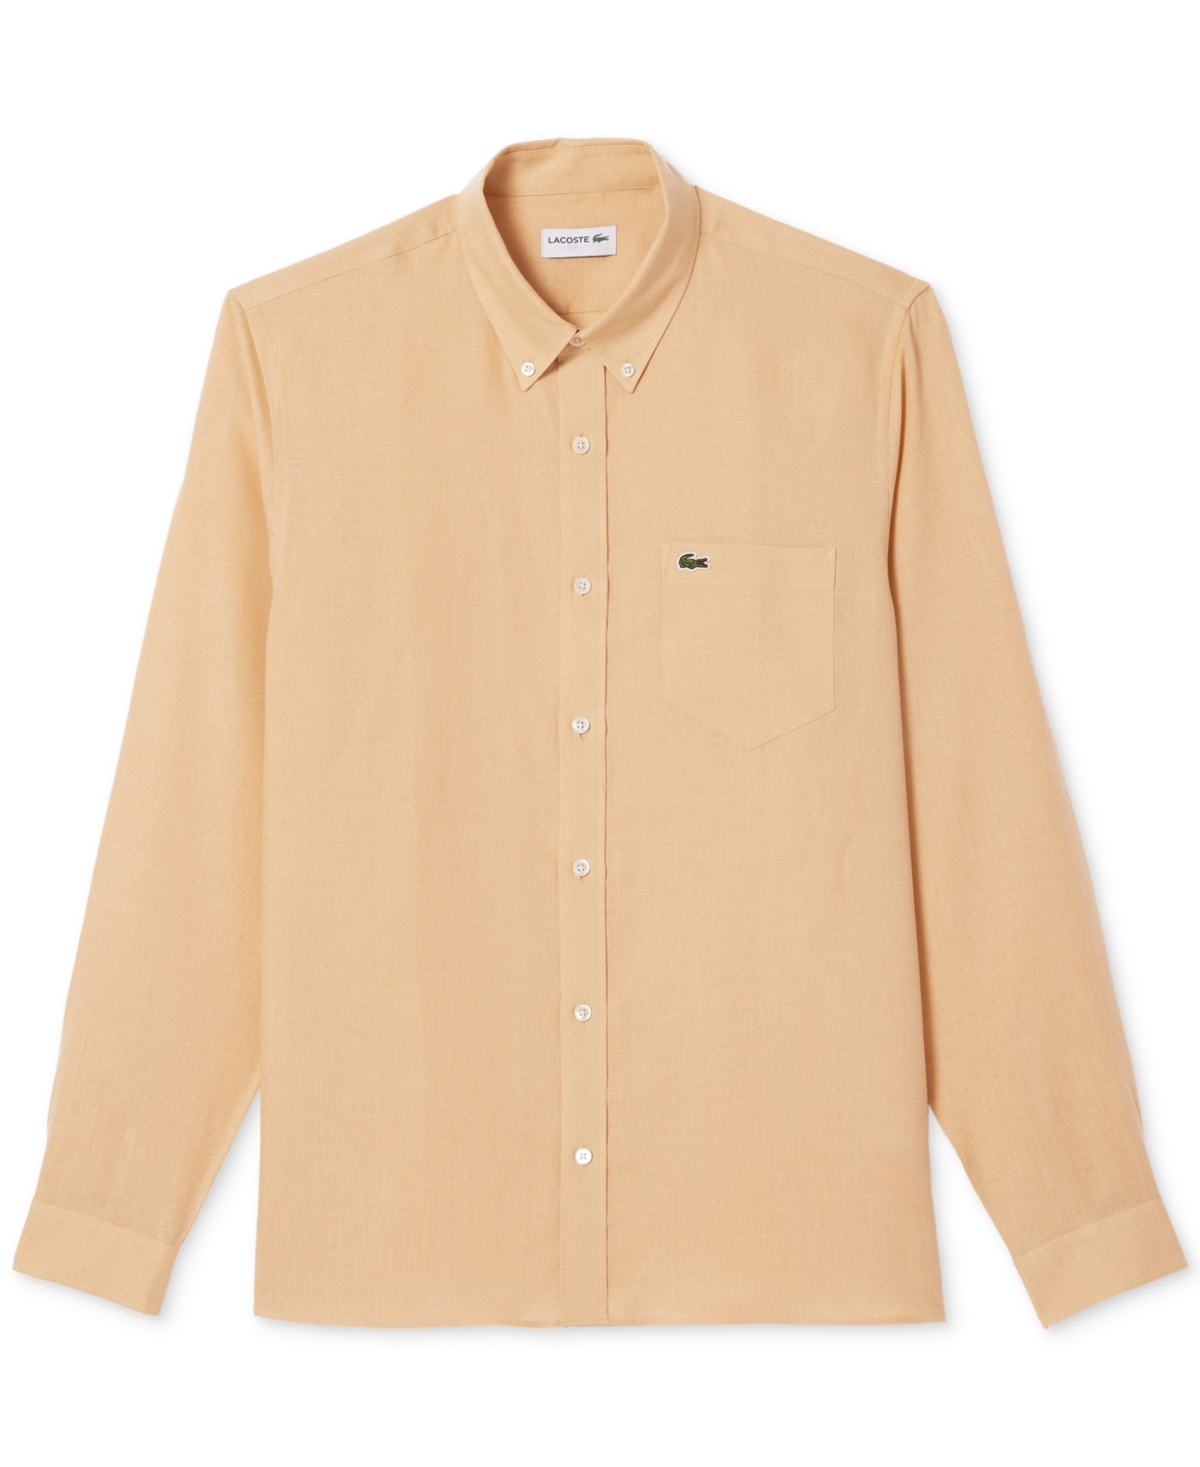 Lacoste Men's Regular-fit Linen Shirt In Ixq